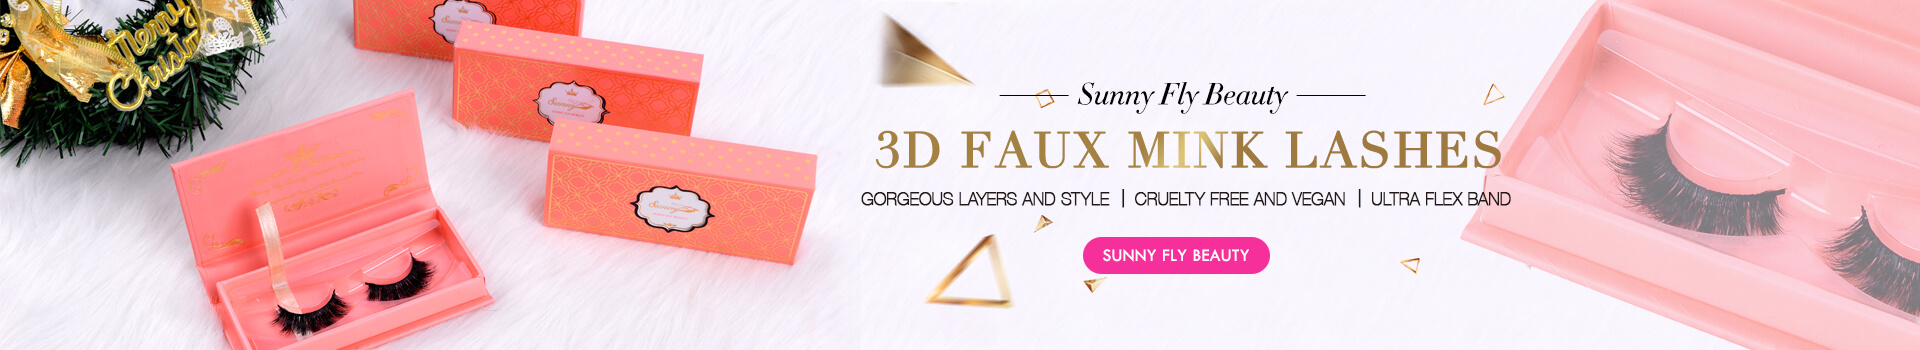 3D Faux Mink Lashes SD06